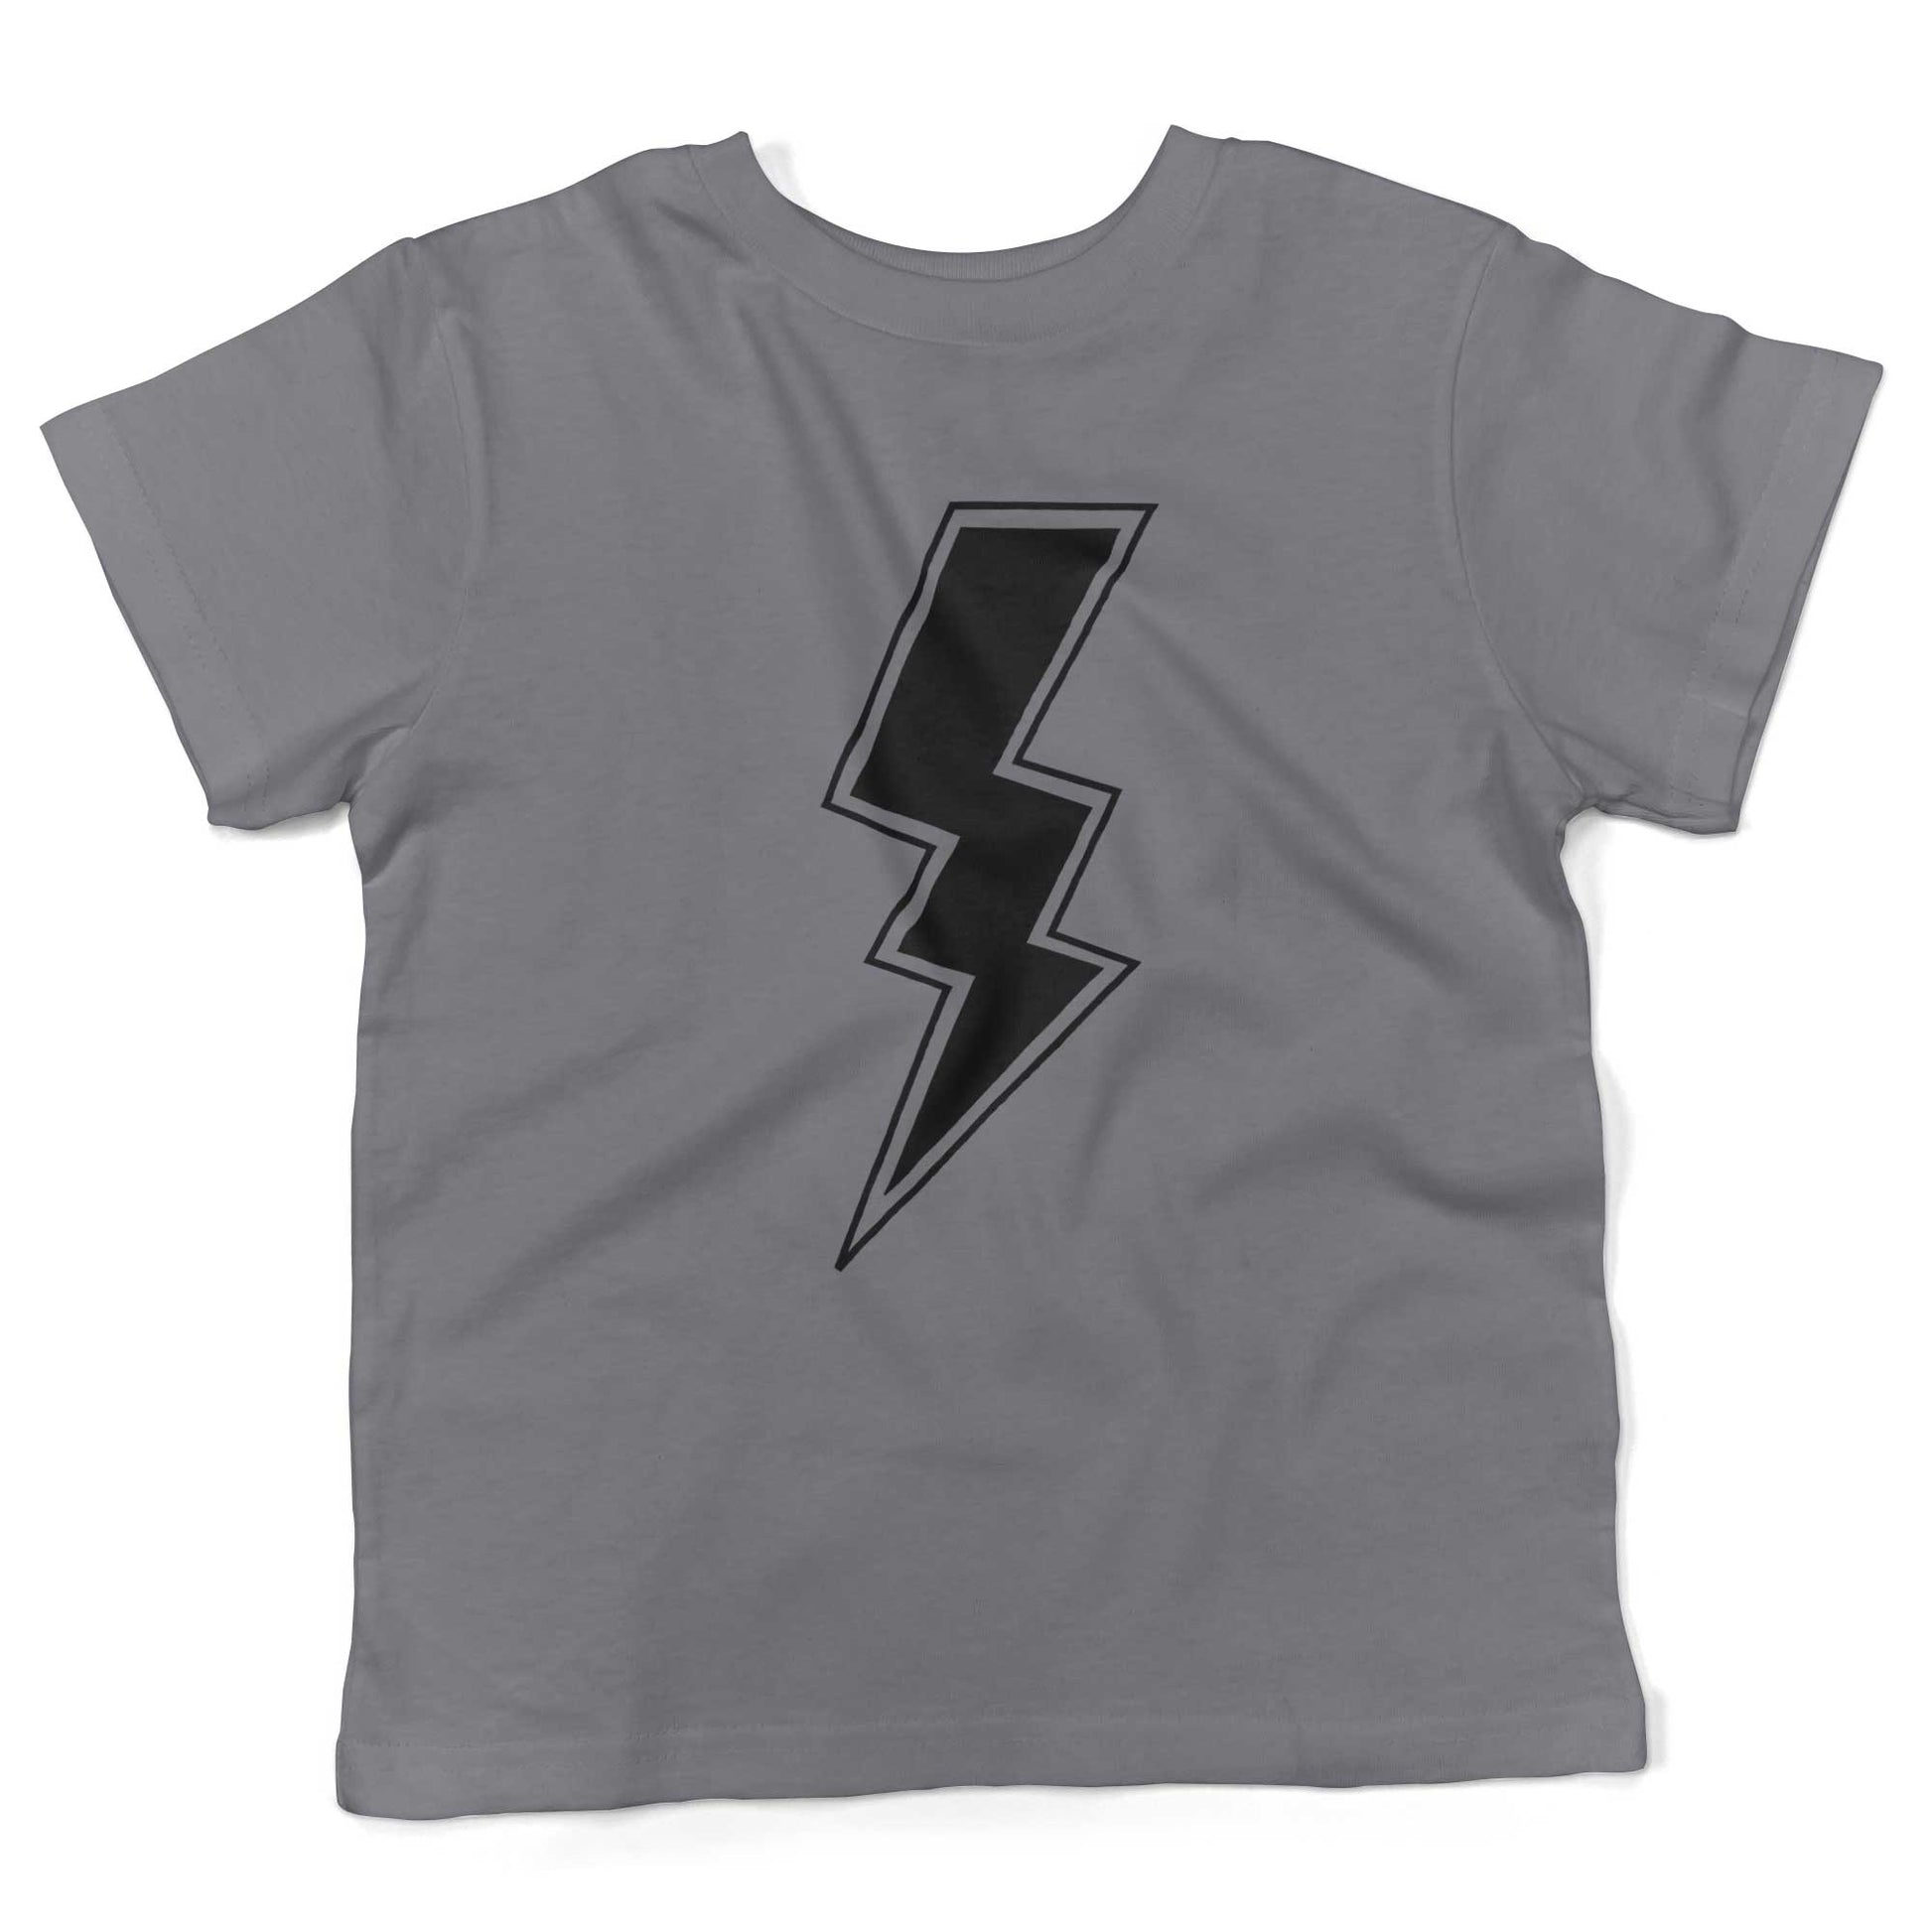 Giant Lightning Bolt Toddler Shirt-Slate-2T